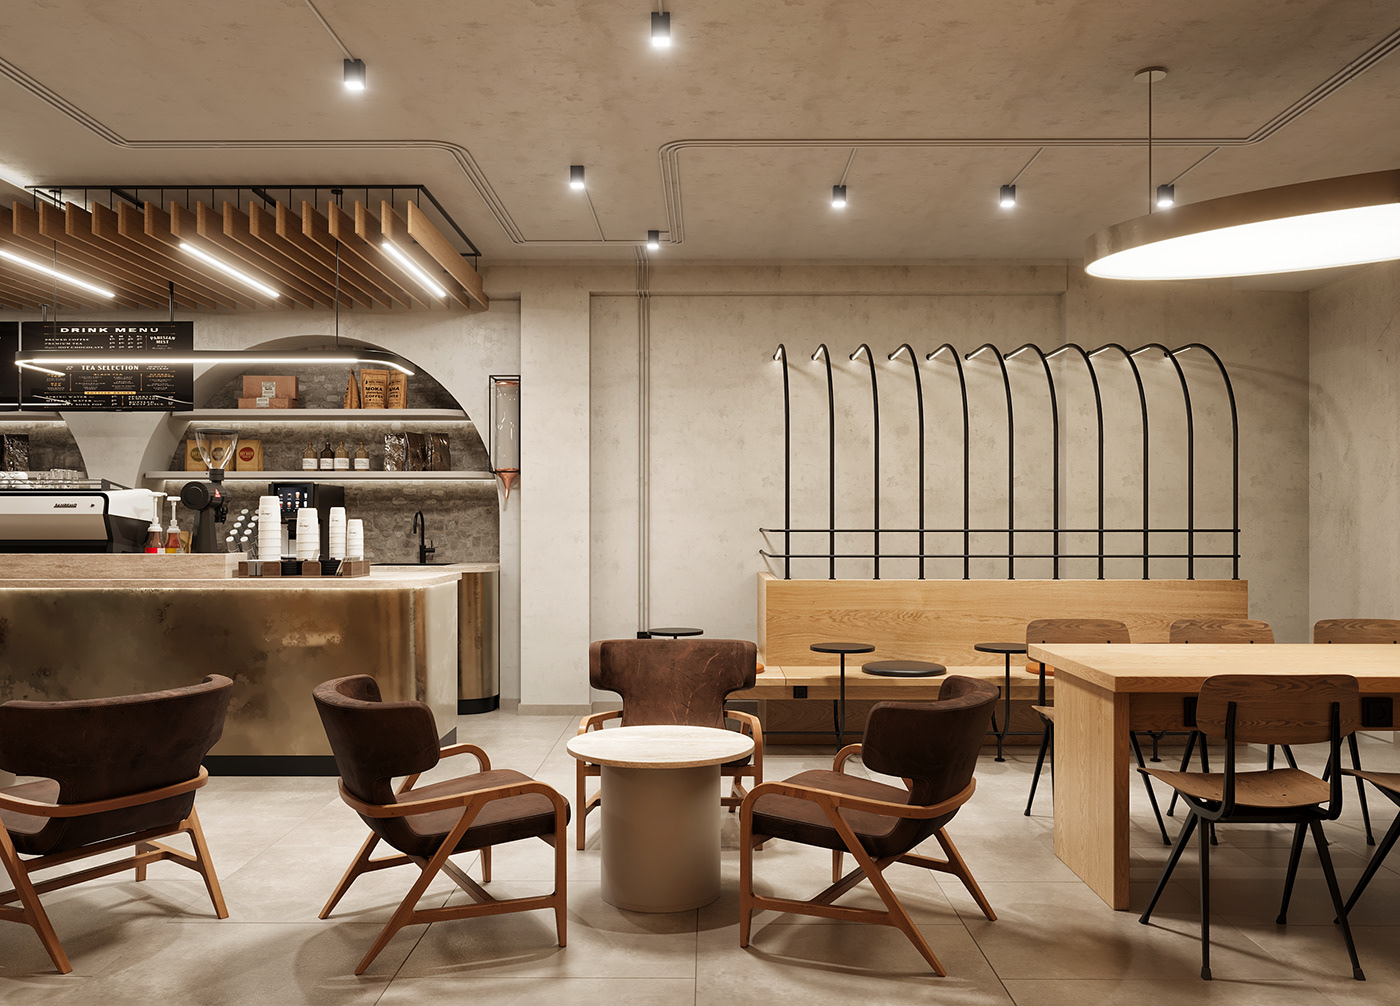 Coffee coffee shop design interior design  architecture modern minimal Interior after effects